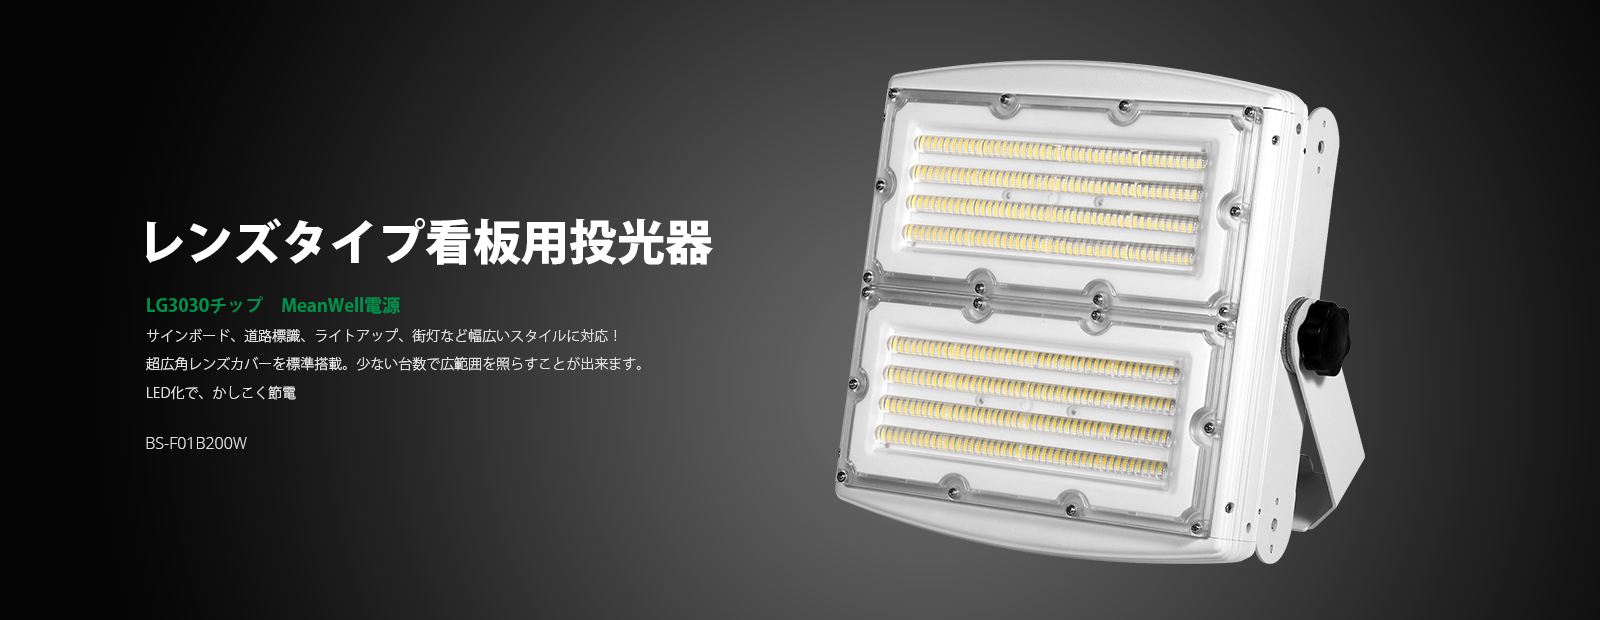 LED投光器 BS-F01B200W